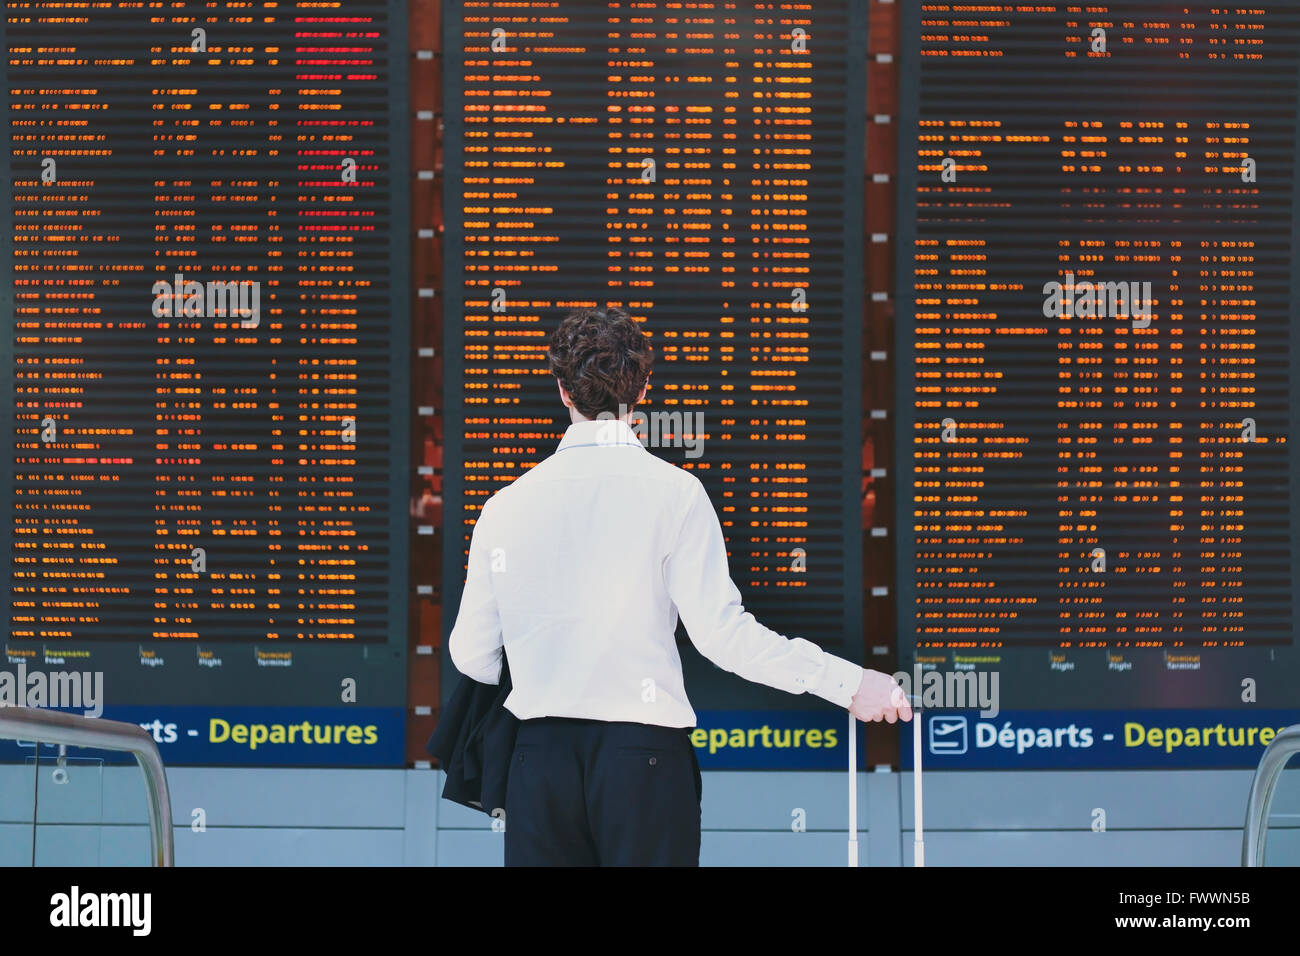 Les gens dans l'aéroport, les voyages d'affaires, à la recherche de passagers à bord de l'écran Calendrier Banque D'Images